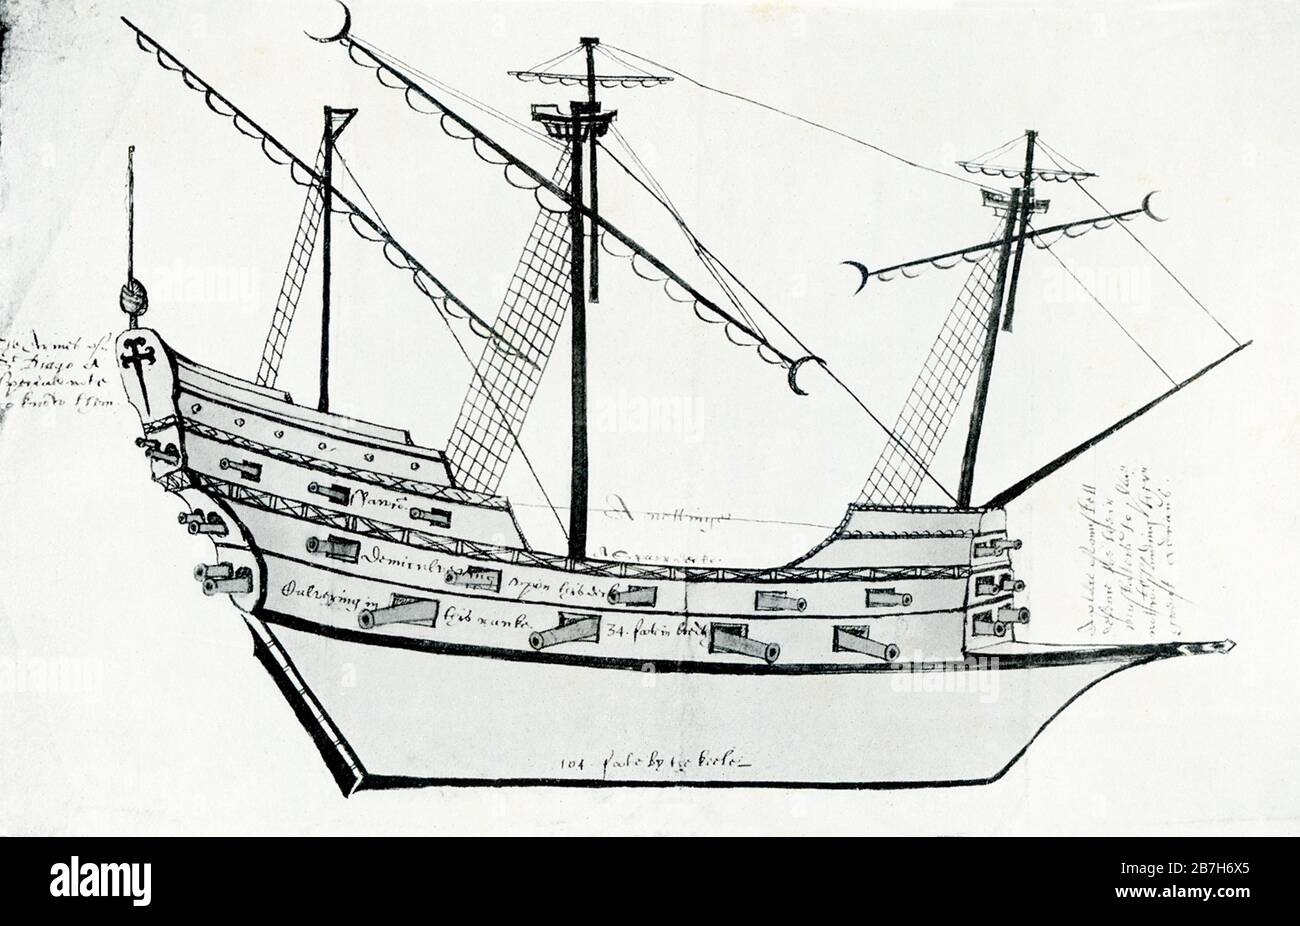 La flotta del tesoro spagnolo, detta anche flotta d'argento o flotta di platea, era un sistema di convogli di rotte marittime organizzato dall'Impero spagnolo dal 1566 al 1790. Ha collegato la Spagna con i suoi territori in America attraverso l'Atlantico. Qui è mostrata una fregata di circa 1590. Una fregata è un tipo di nave da guerra, che ha varie dimensioni e ruoli nel tempo. Nel 17 ° secolo, una fregata era qualsiasi nave da guerra costruita per la velocità e la manovrabilità. Foto Stock